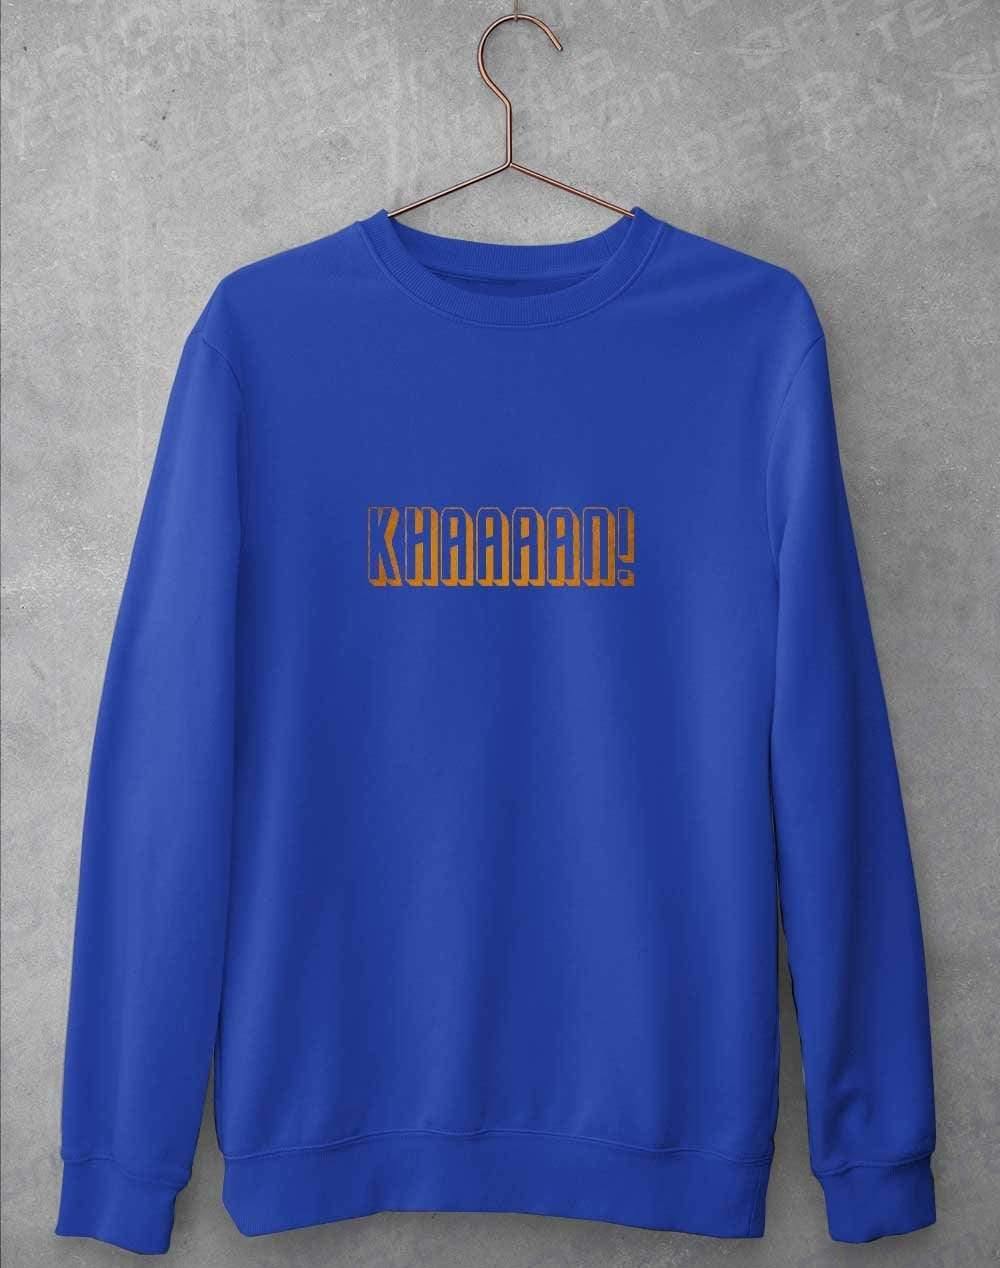 KHAAAAAN Sweatshirt S / Royal Blue  - Off World Tees